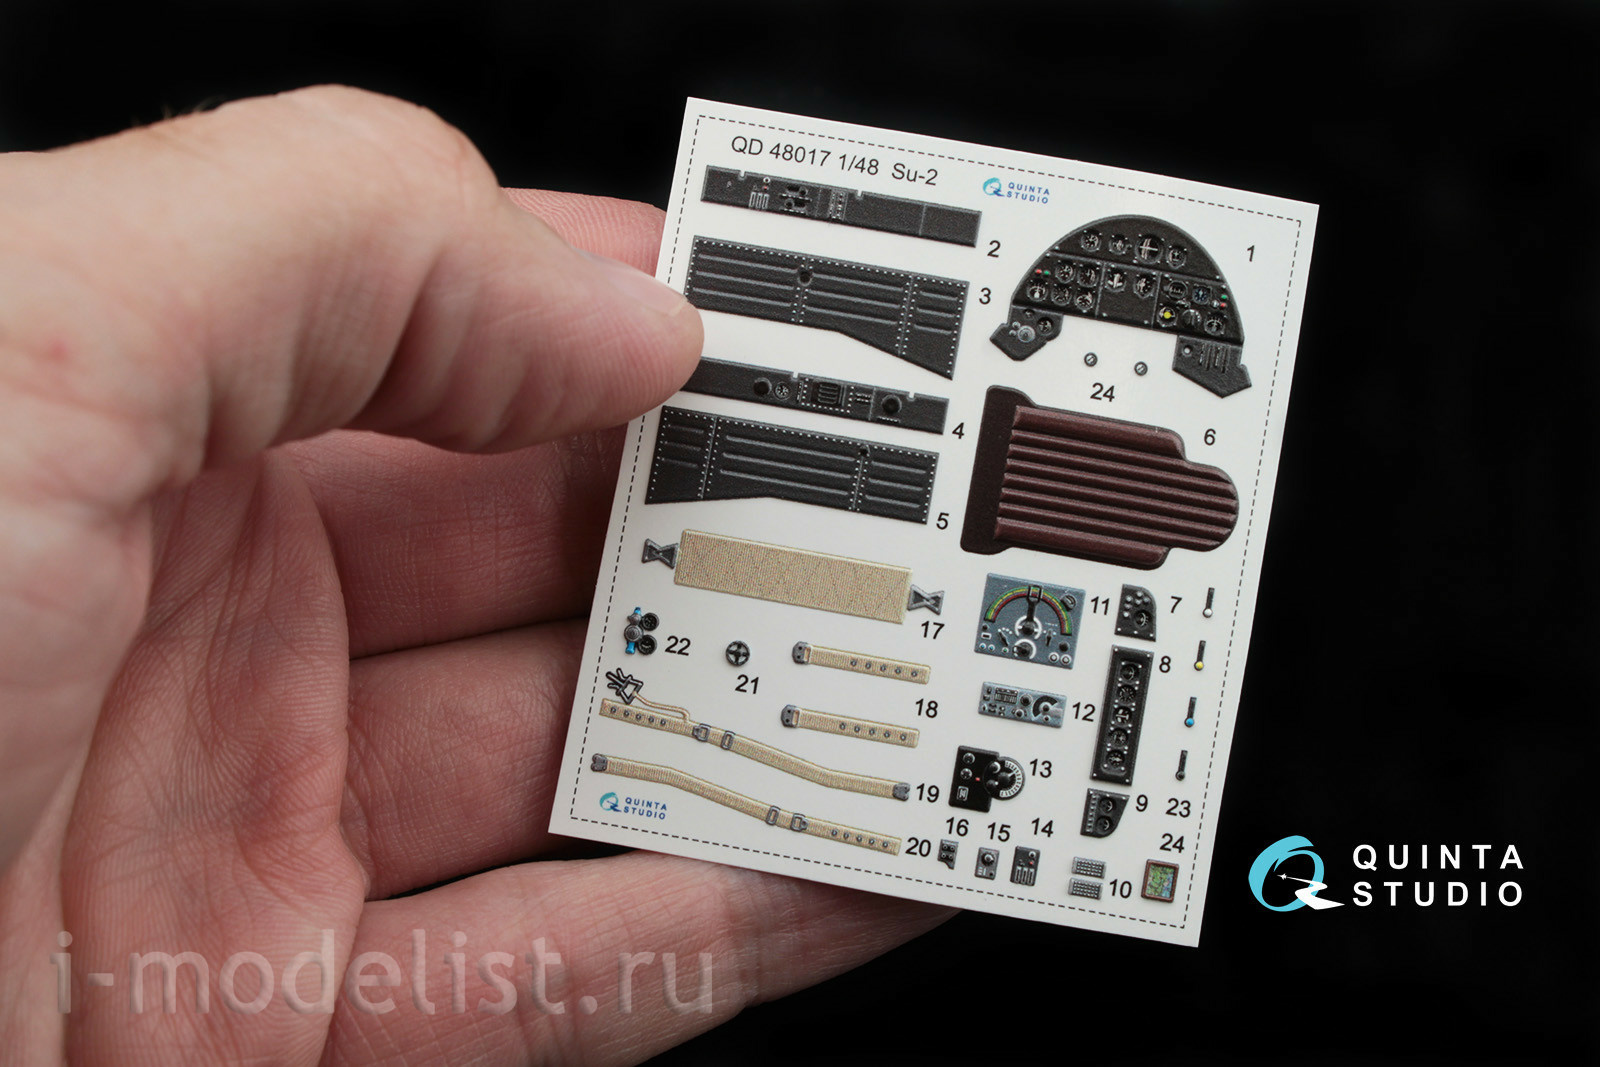 QD48017 Quinta Studio 1/48 3D Декаль интерьера кабины Суххой-2 (для модели Звезда)